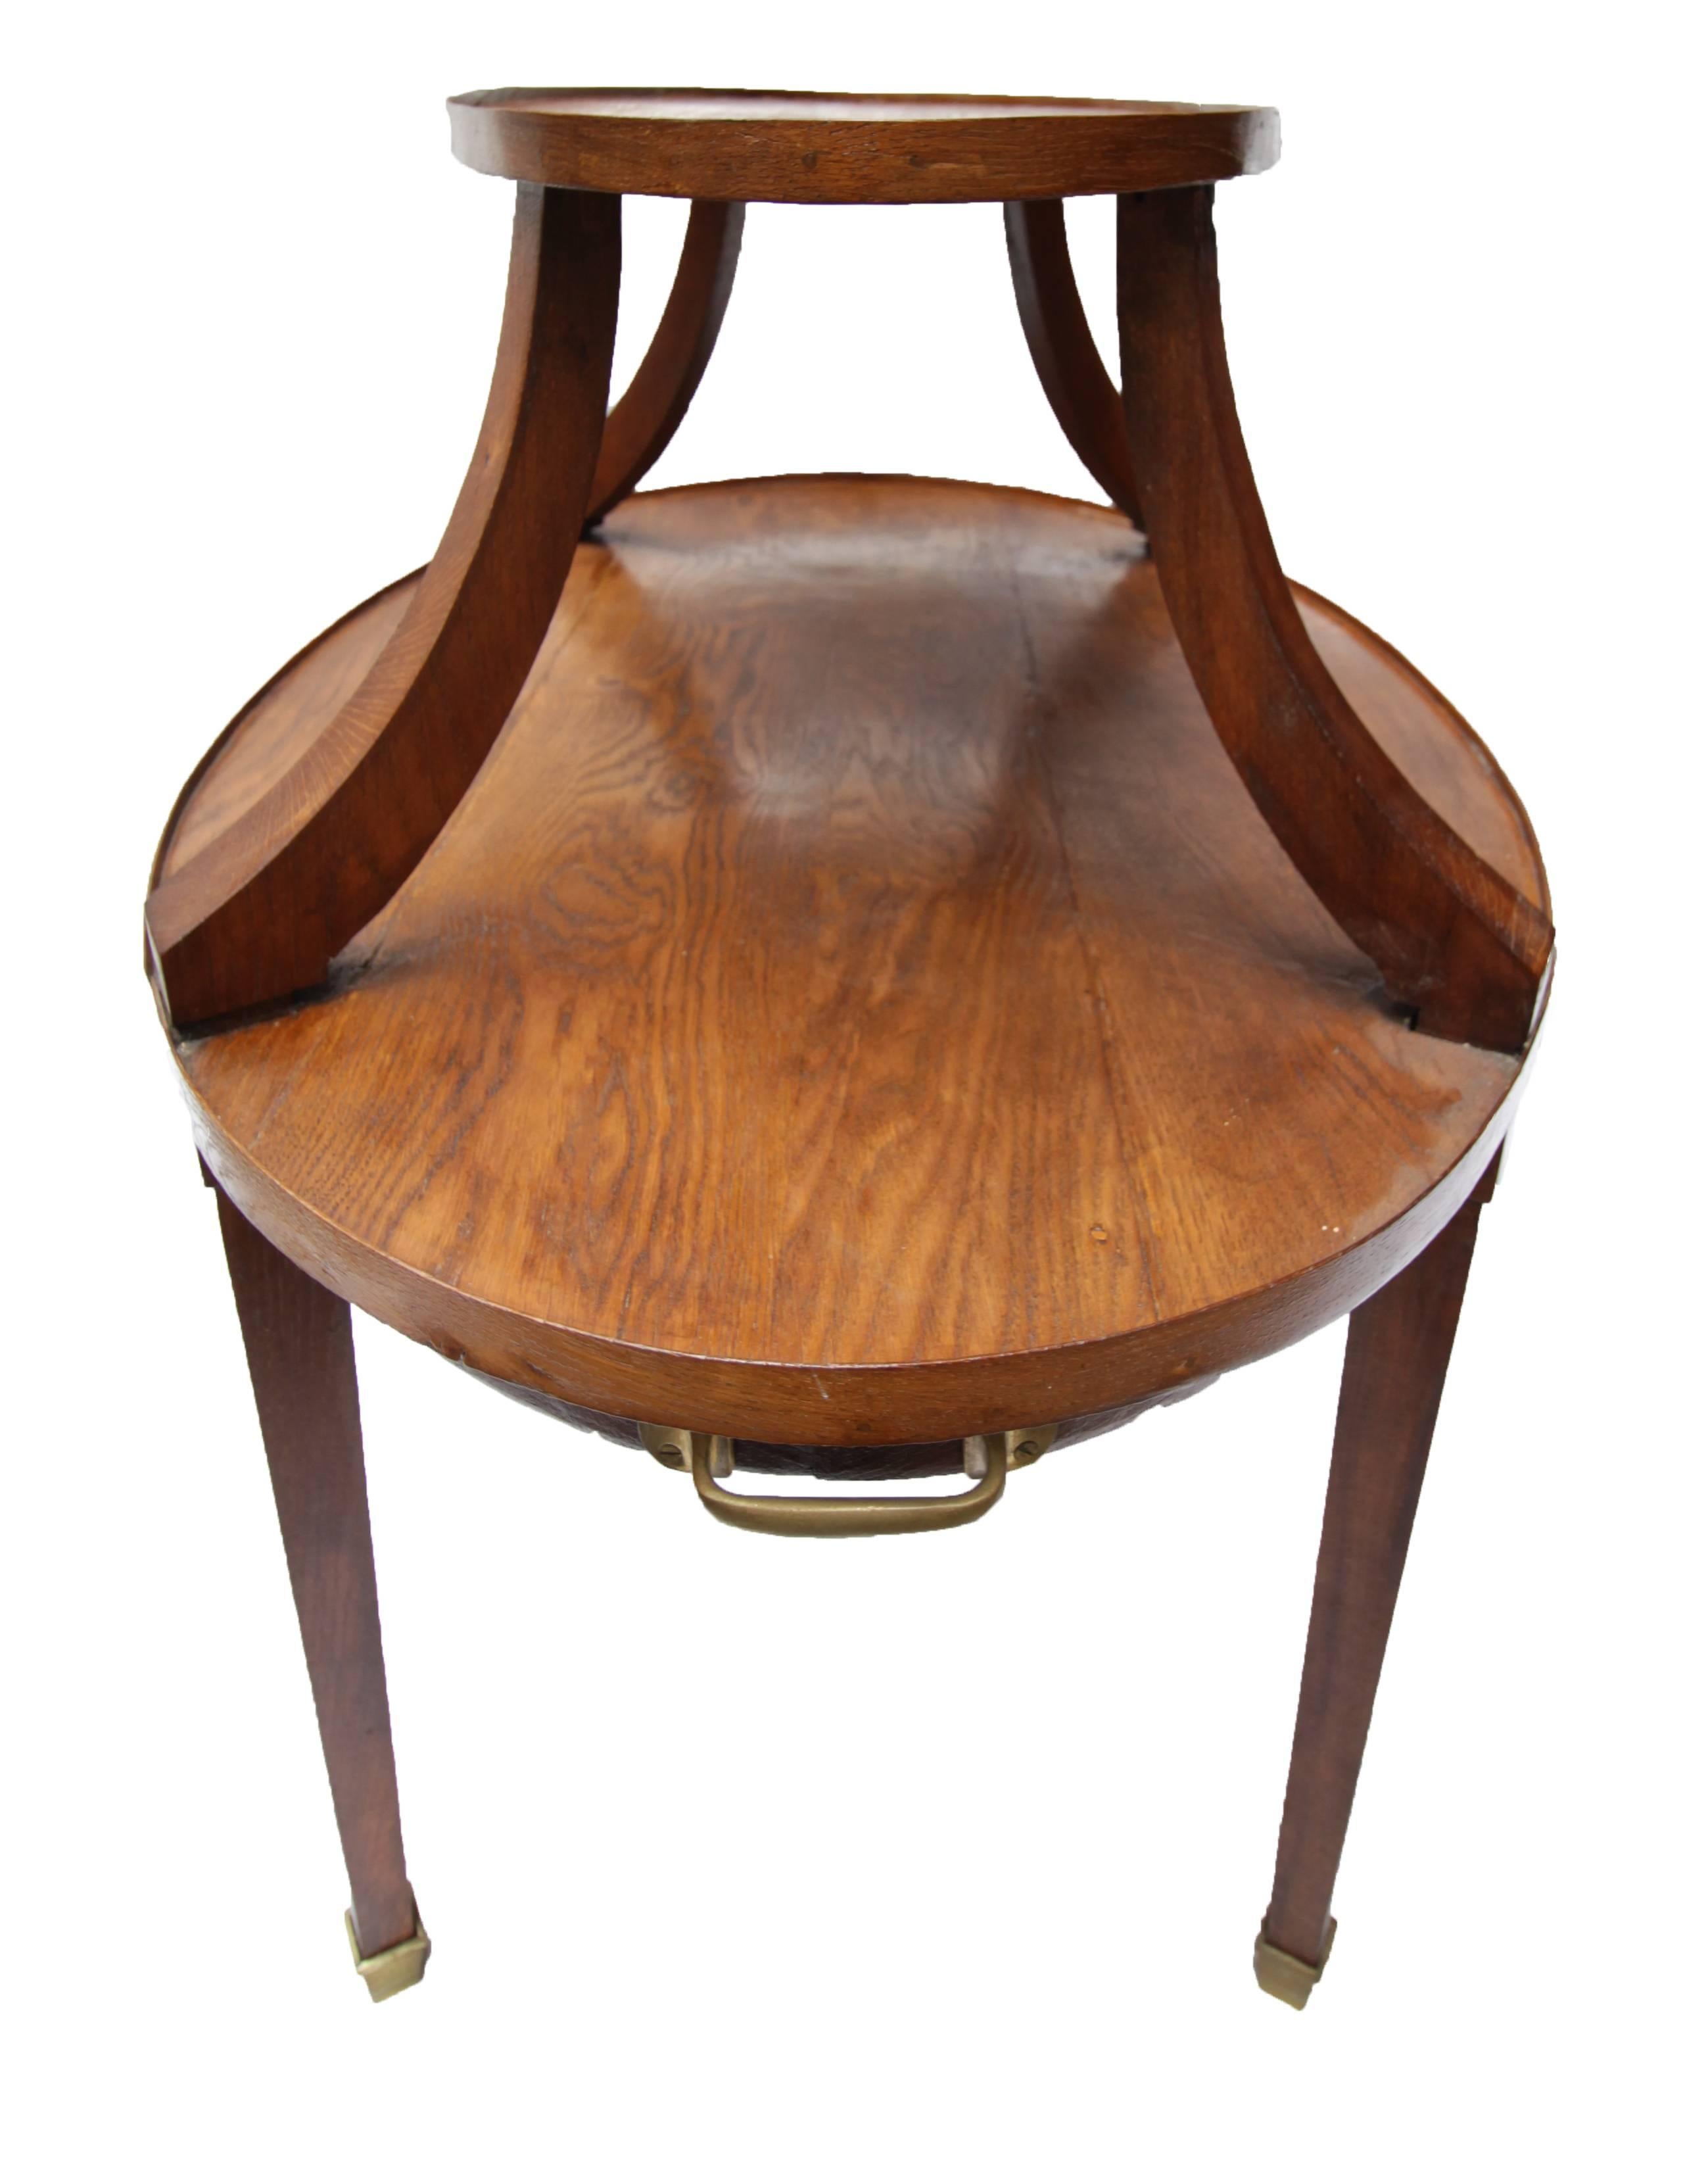 German Art Nouveau Oak Table For Sale